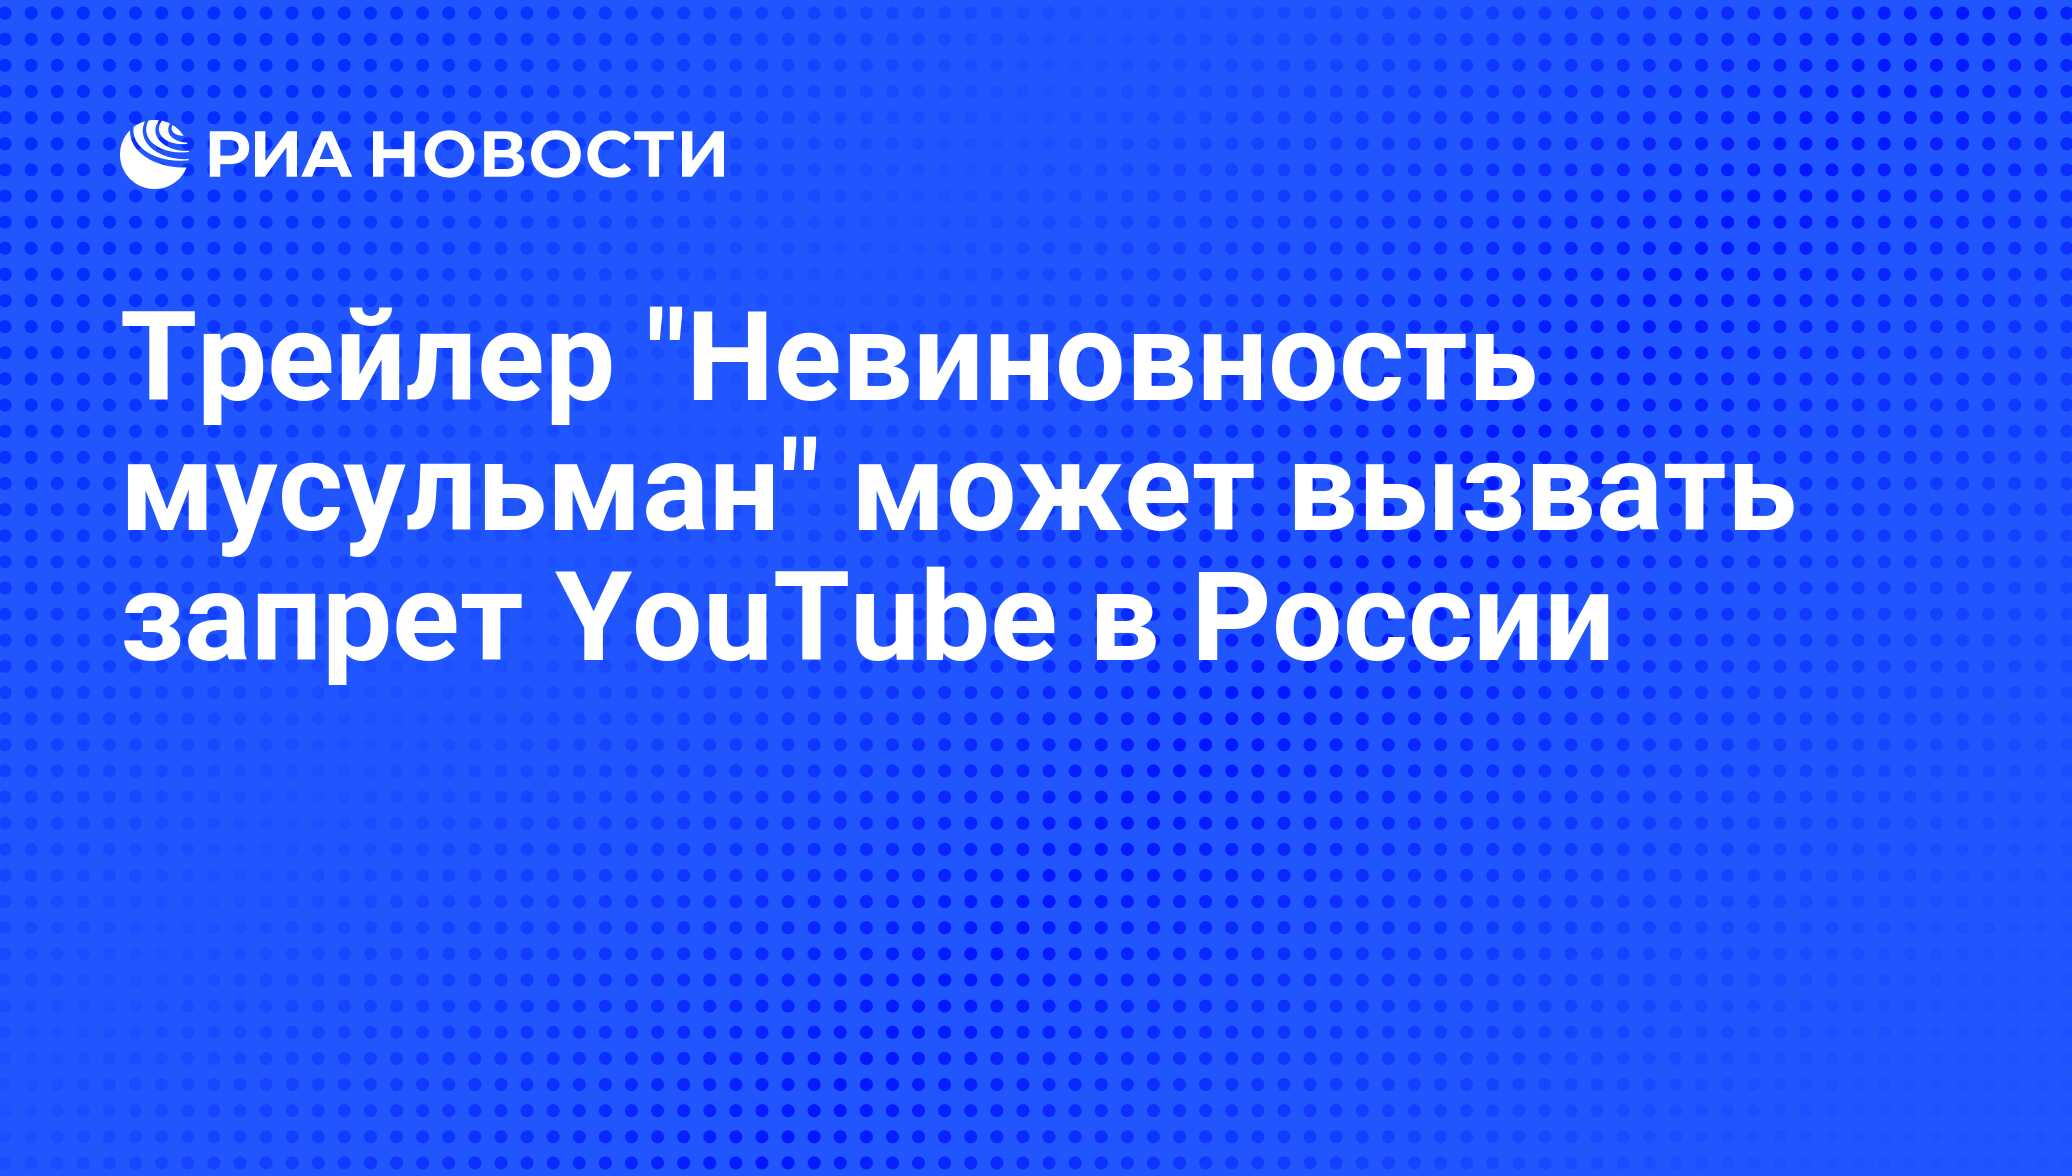 Youtube запрещен в россии